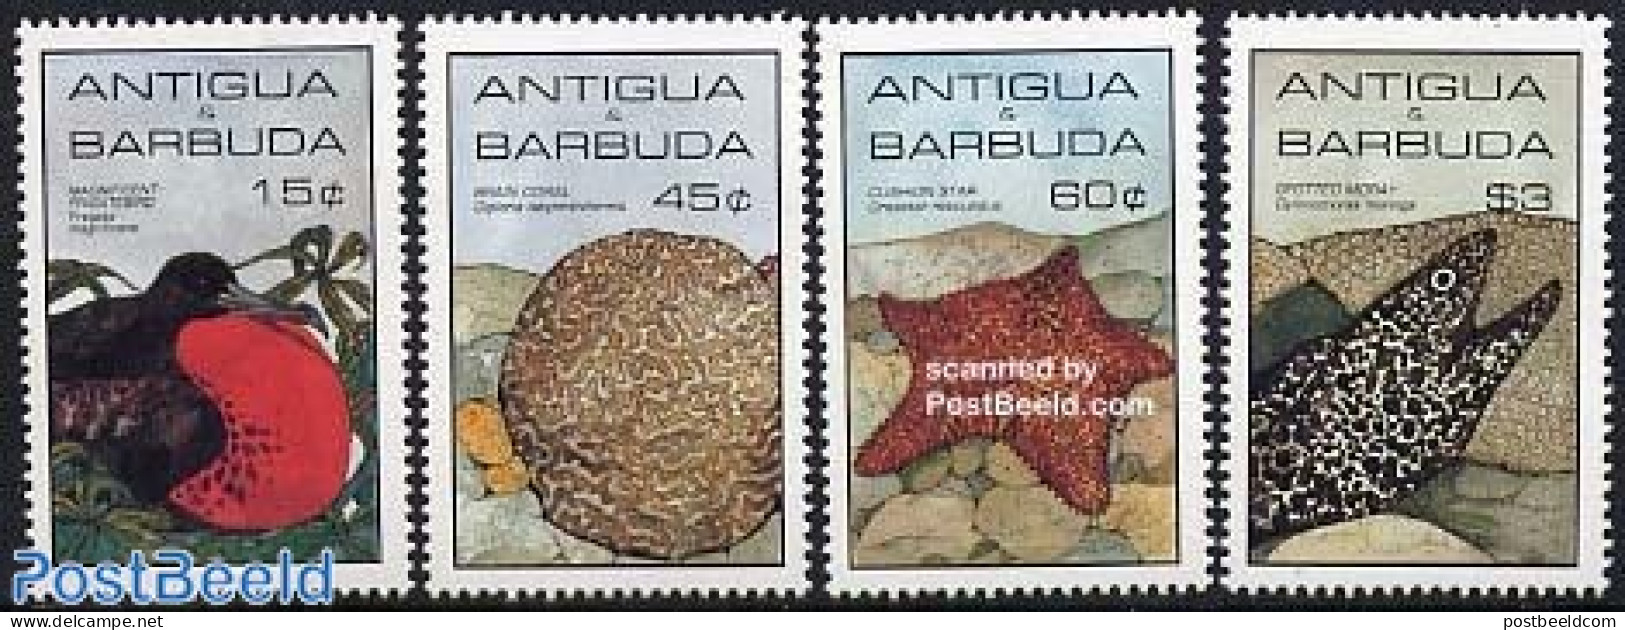 Antigua & Barbuda 1985 Animals 4v, Mint NH, Nature - Sport - Birds - Fish - Shells & Crustaceans - Diving - Fische